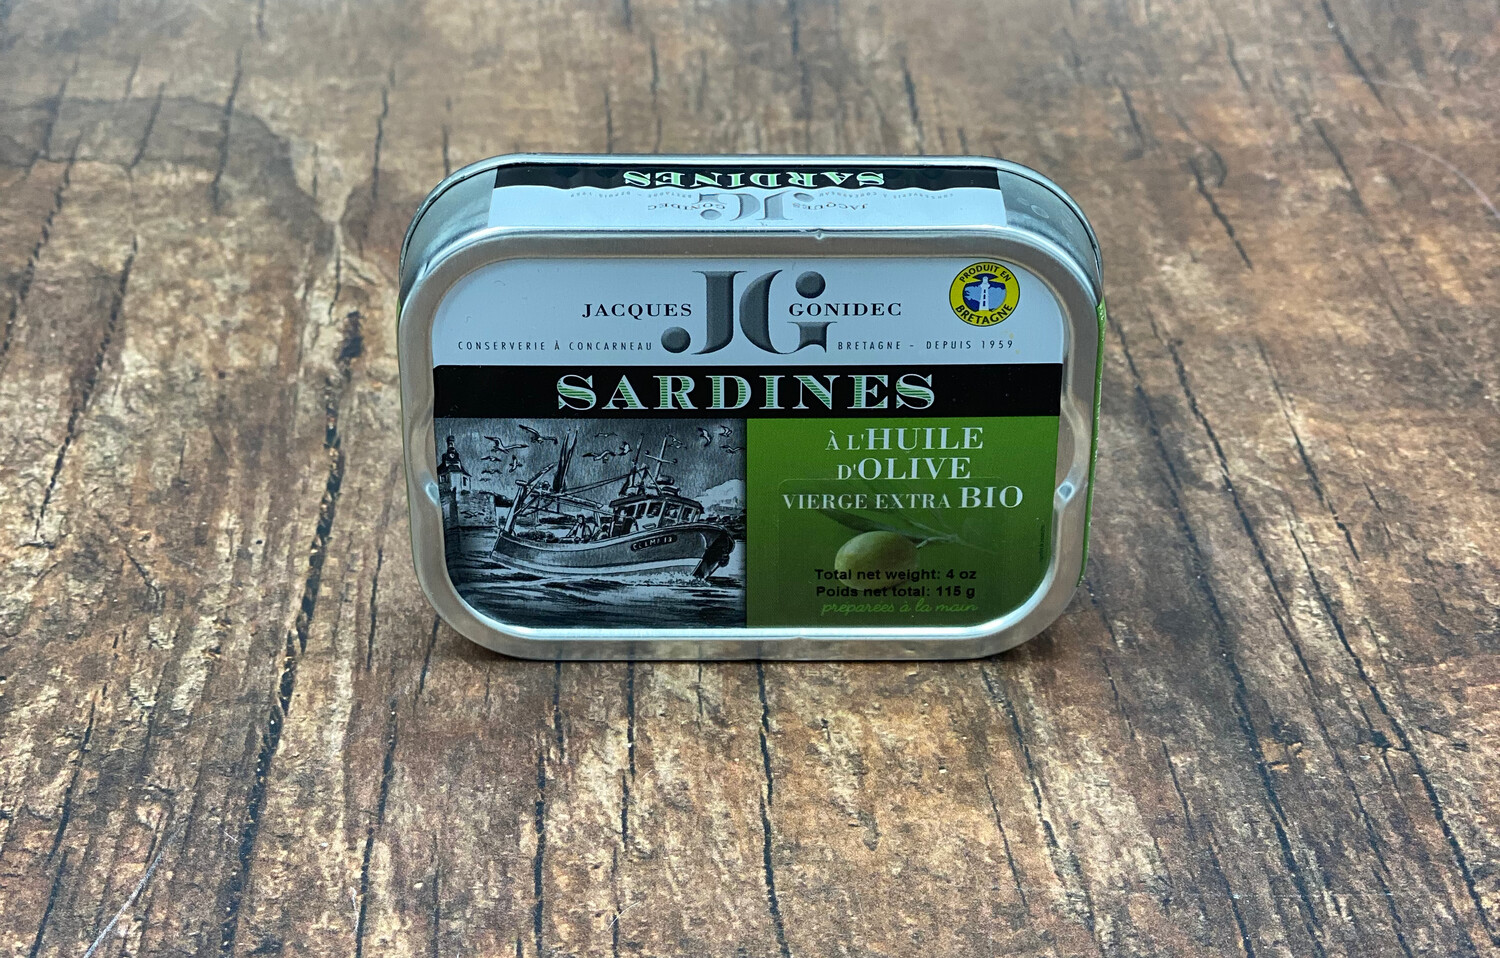 Gonidec Sardines